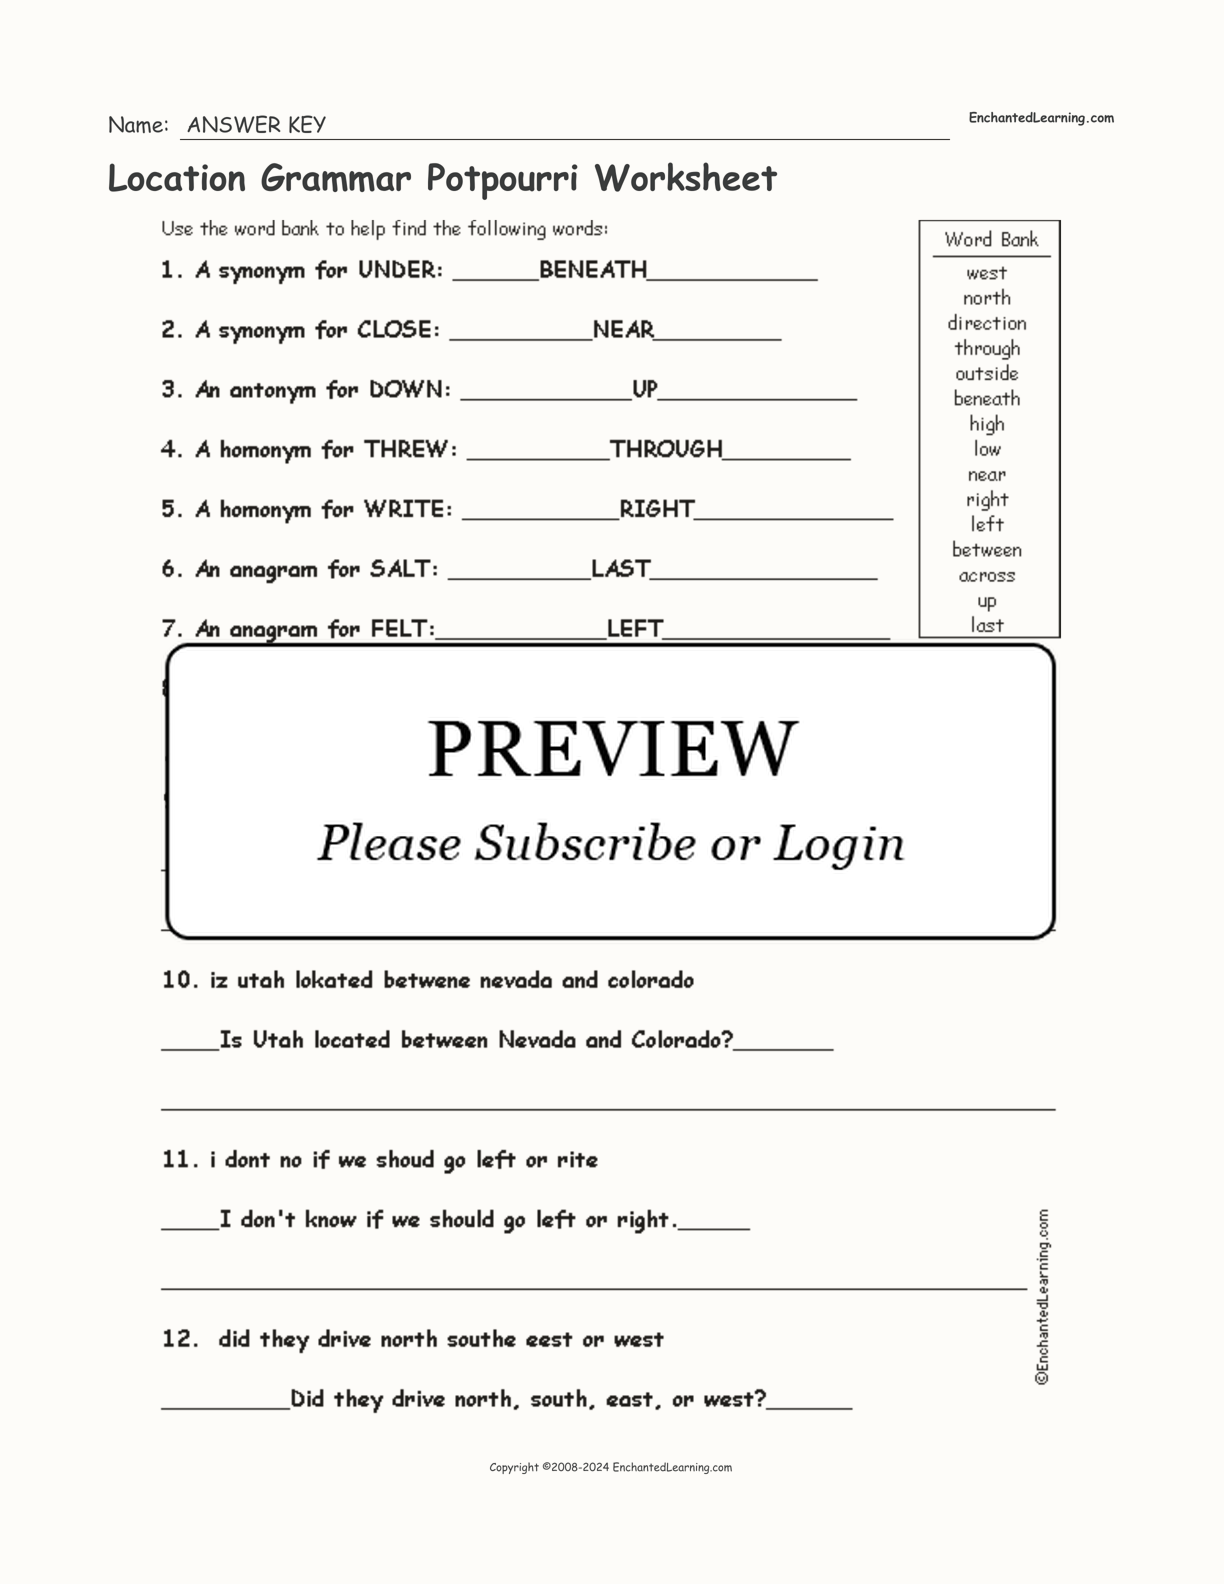 Location Grammar Potpourri Worksheet interactive worksheet page 2